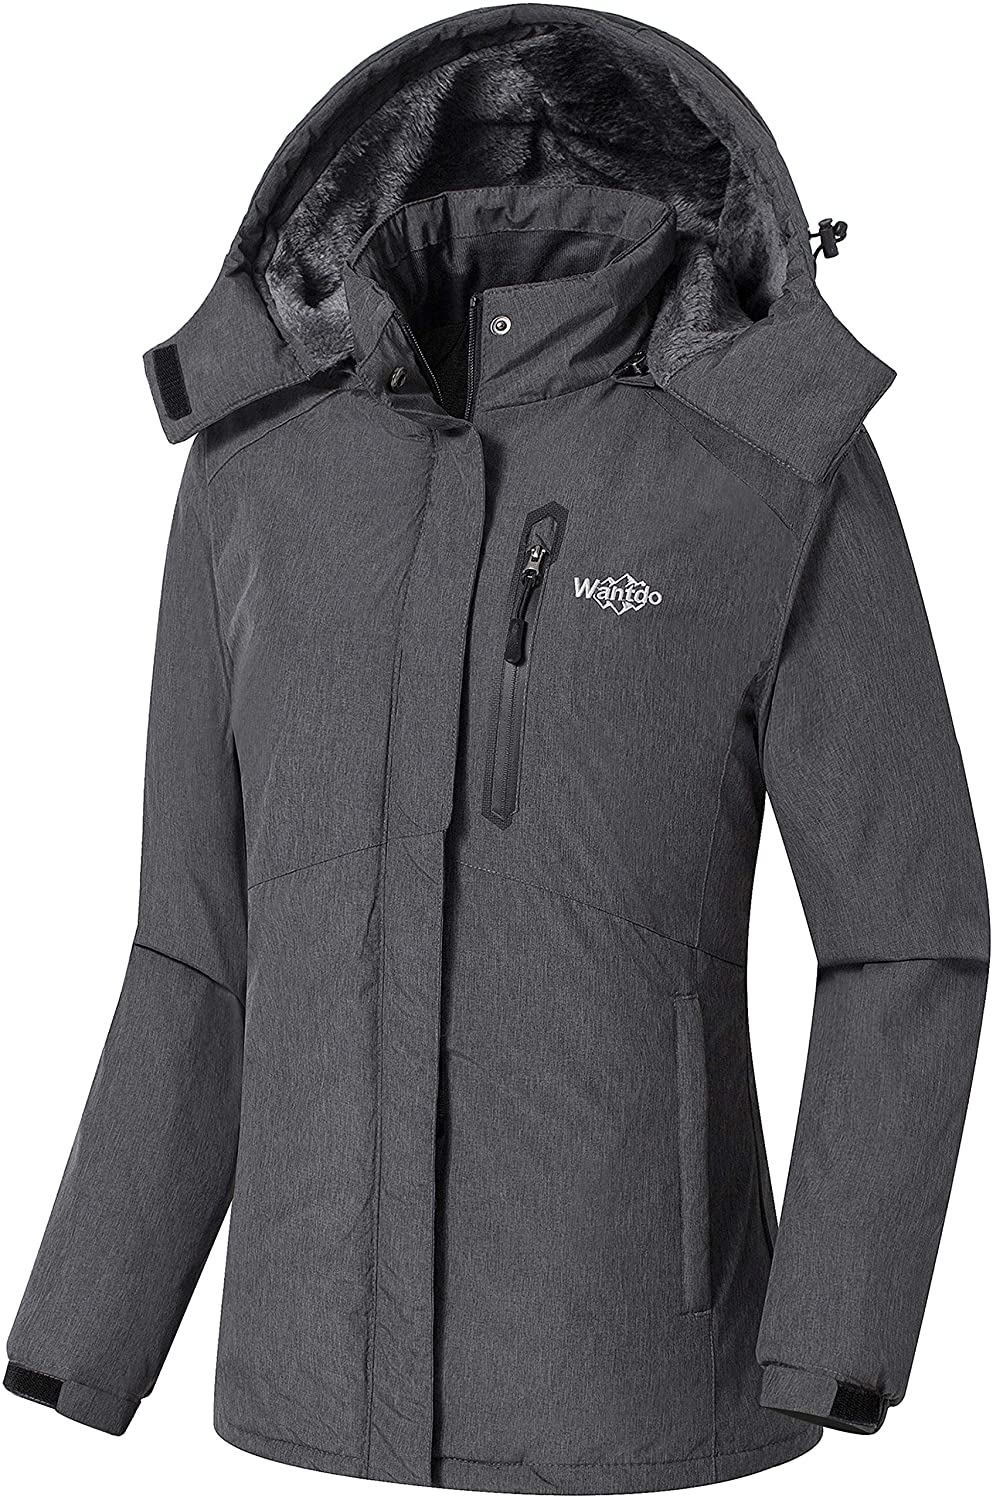 Wantdo Womens Waterproof Ski Jacket Fleece Winter Warm Parka Windproof Snow Coat 